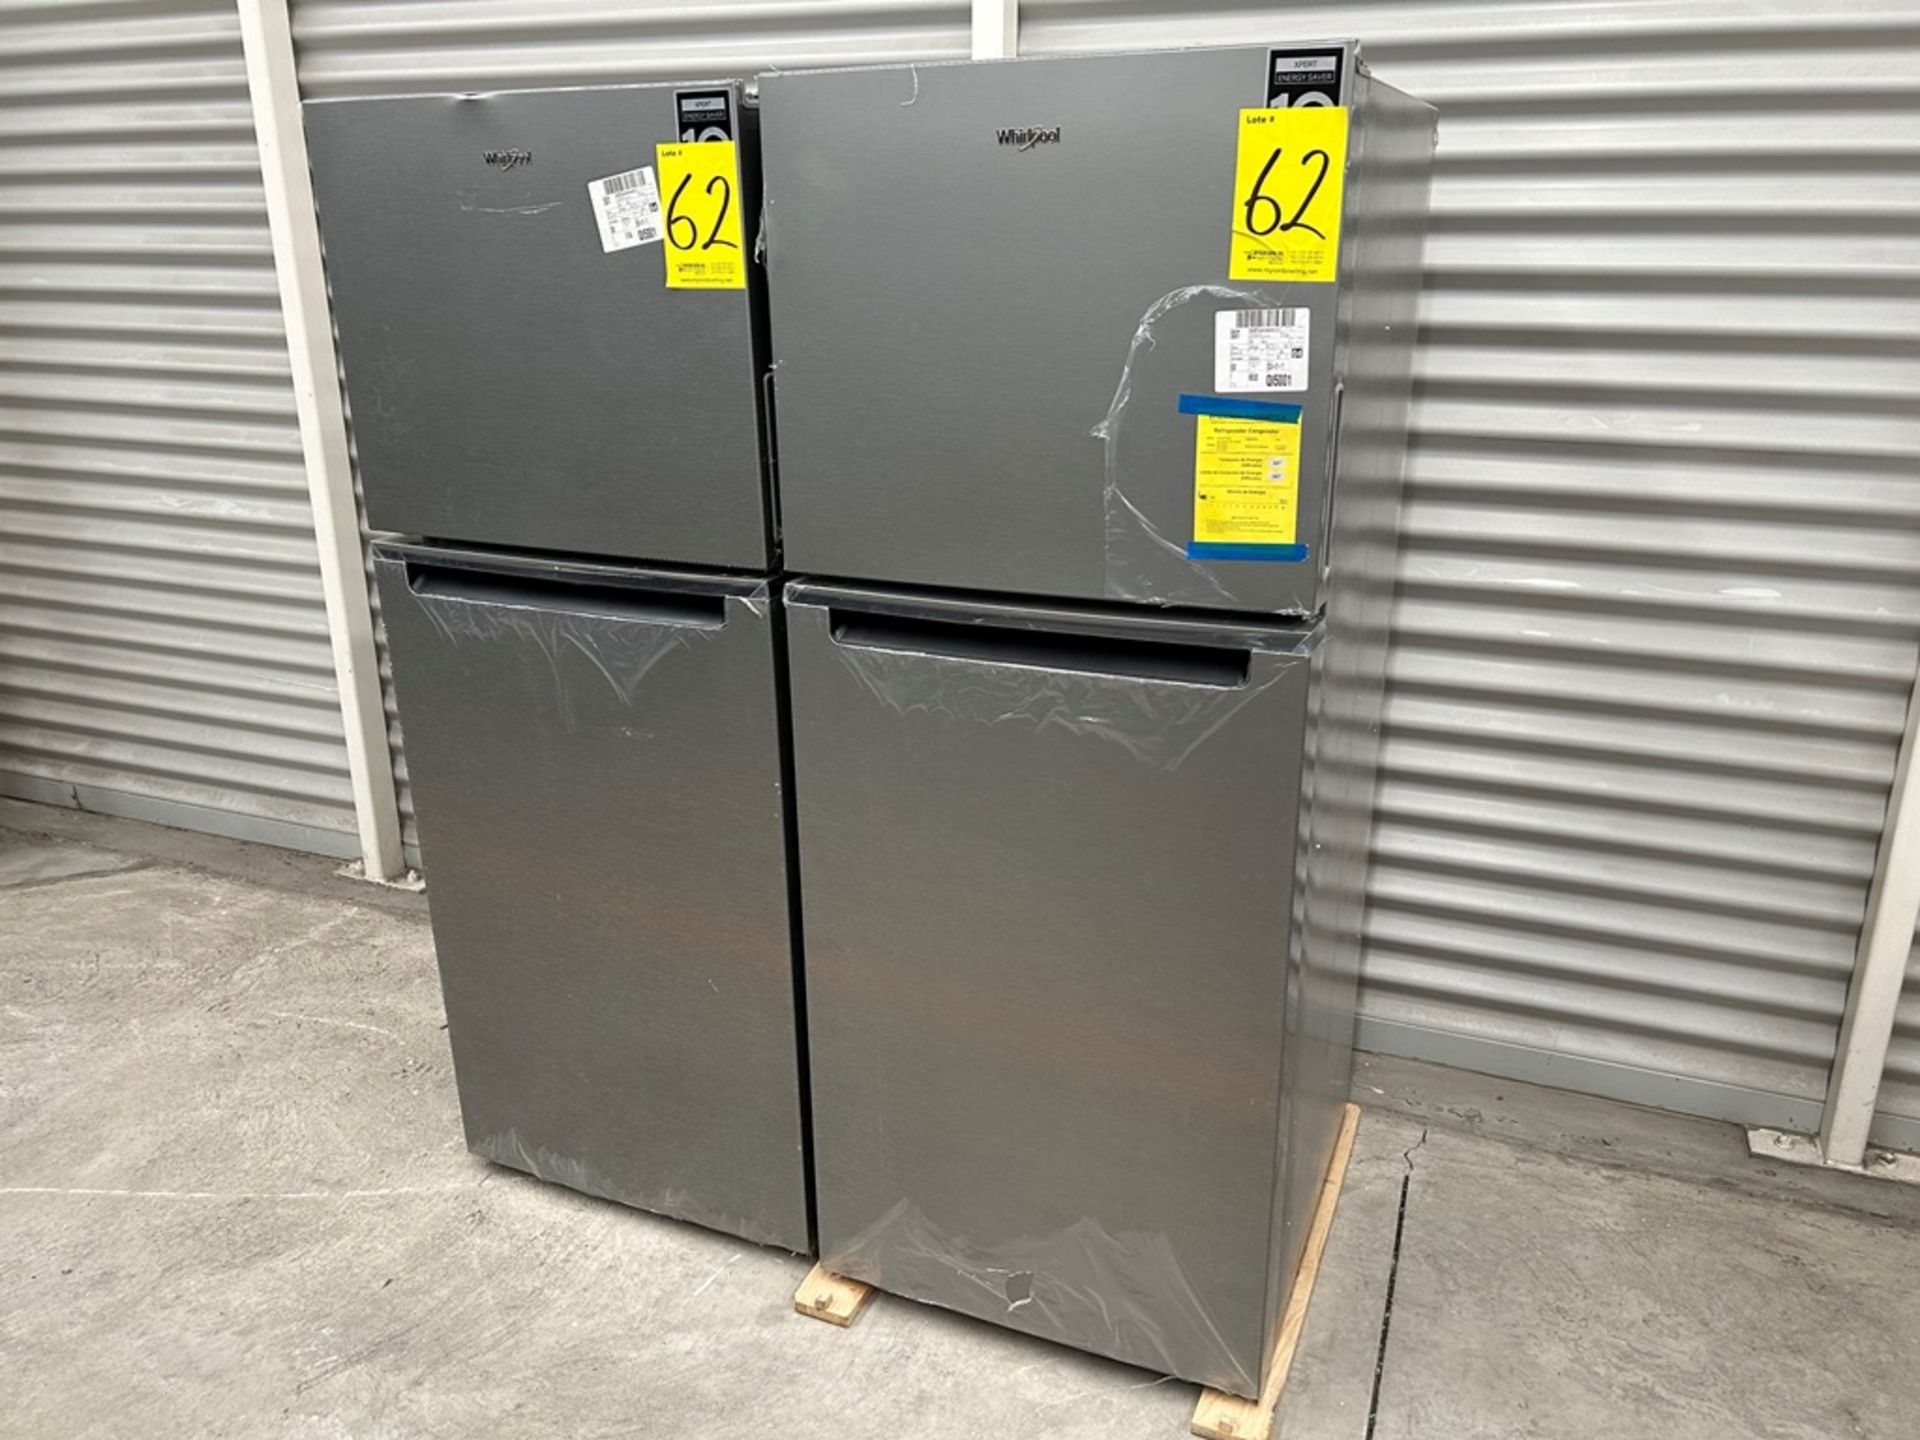 Lote de 2 refrigeradores contiene: 1 Refrigerador Marca WHIRPOOL, Modelo WT1230K, Serie 91306, Colo - Image 2 of 17